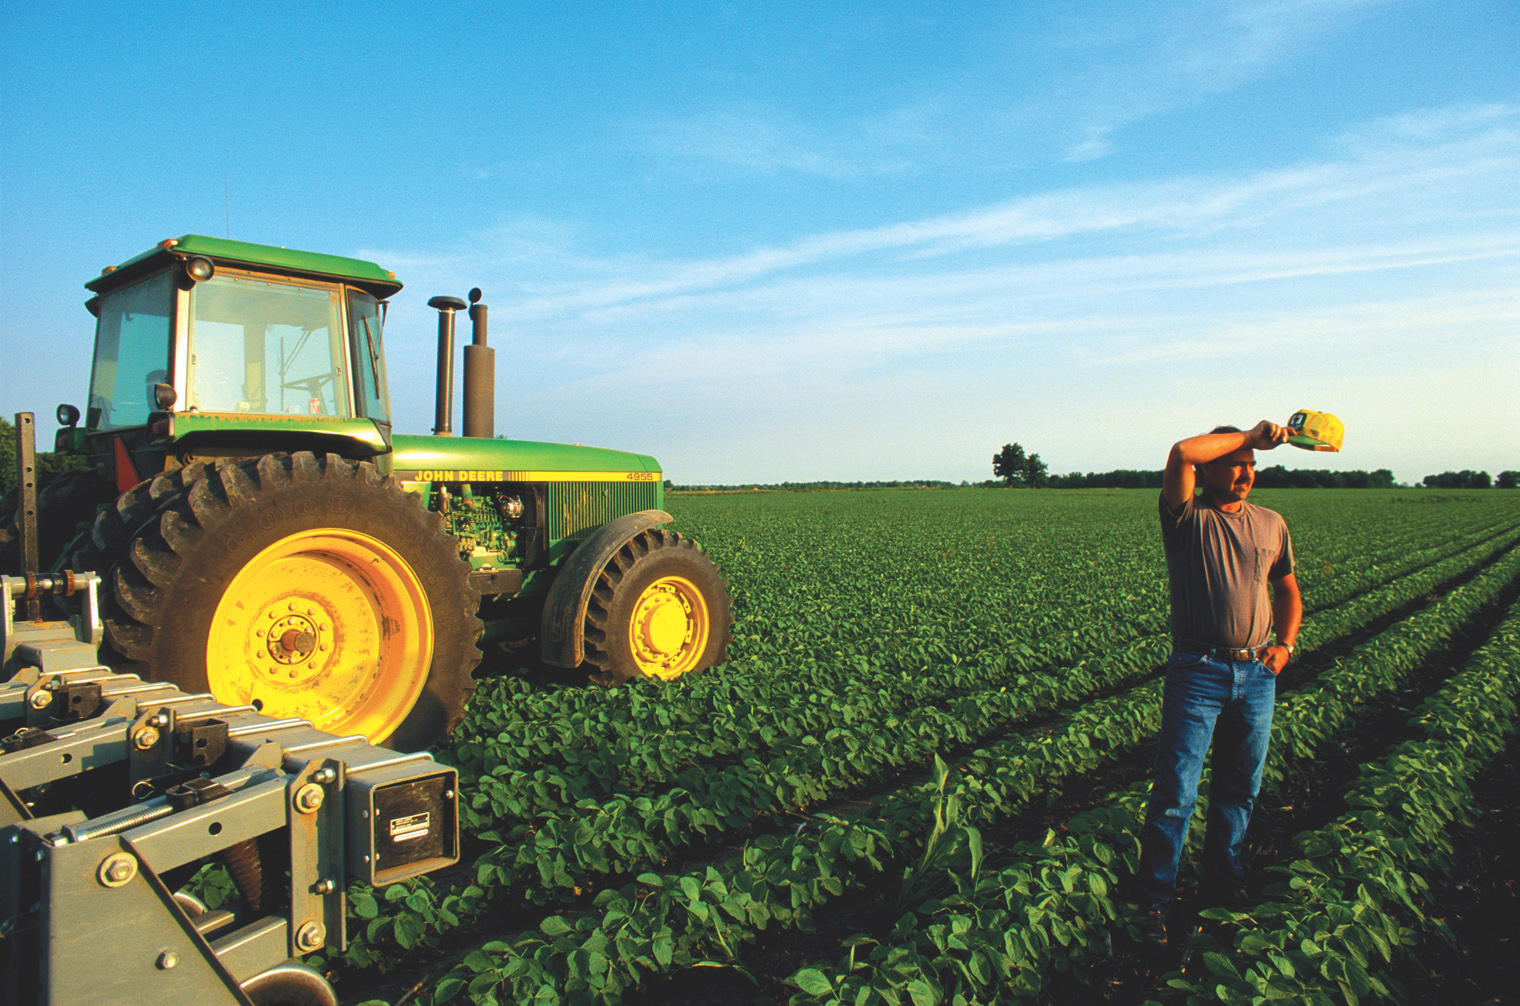 Розвиток фермерських господарств сприятиме наповненню внутрішнього ринку якісною продукцією. Фото з сайту mygenerator.com.au